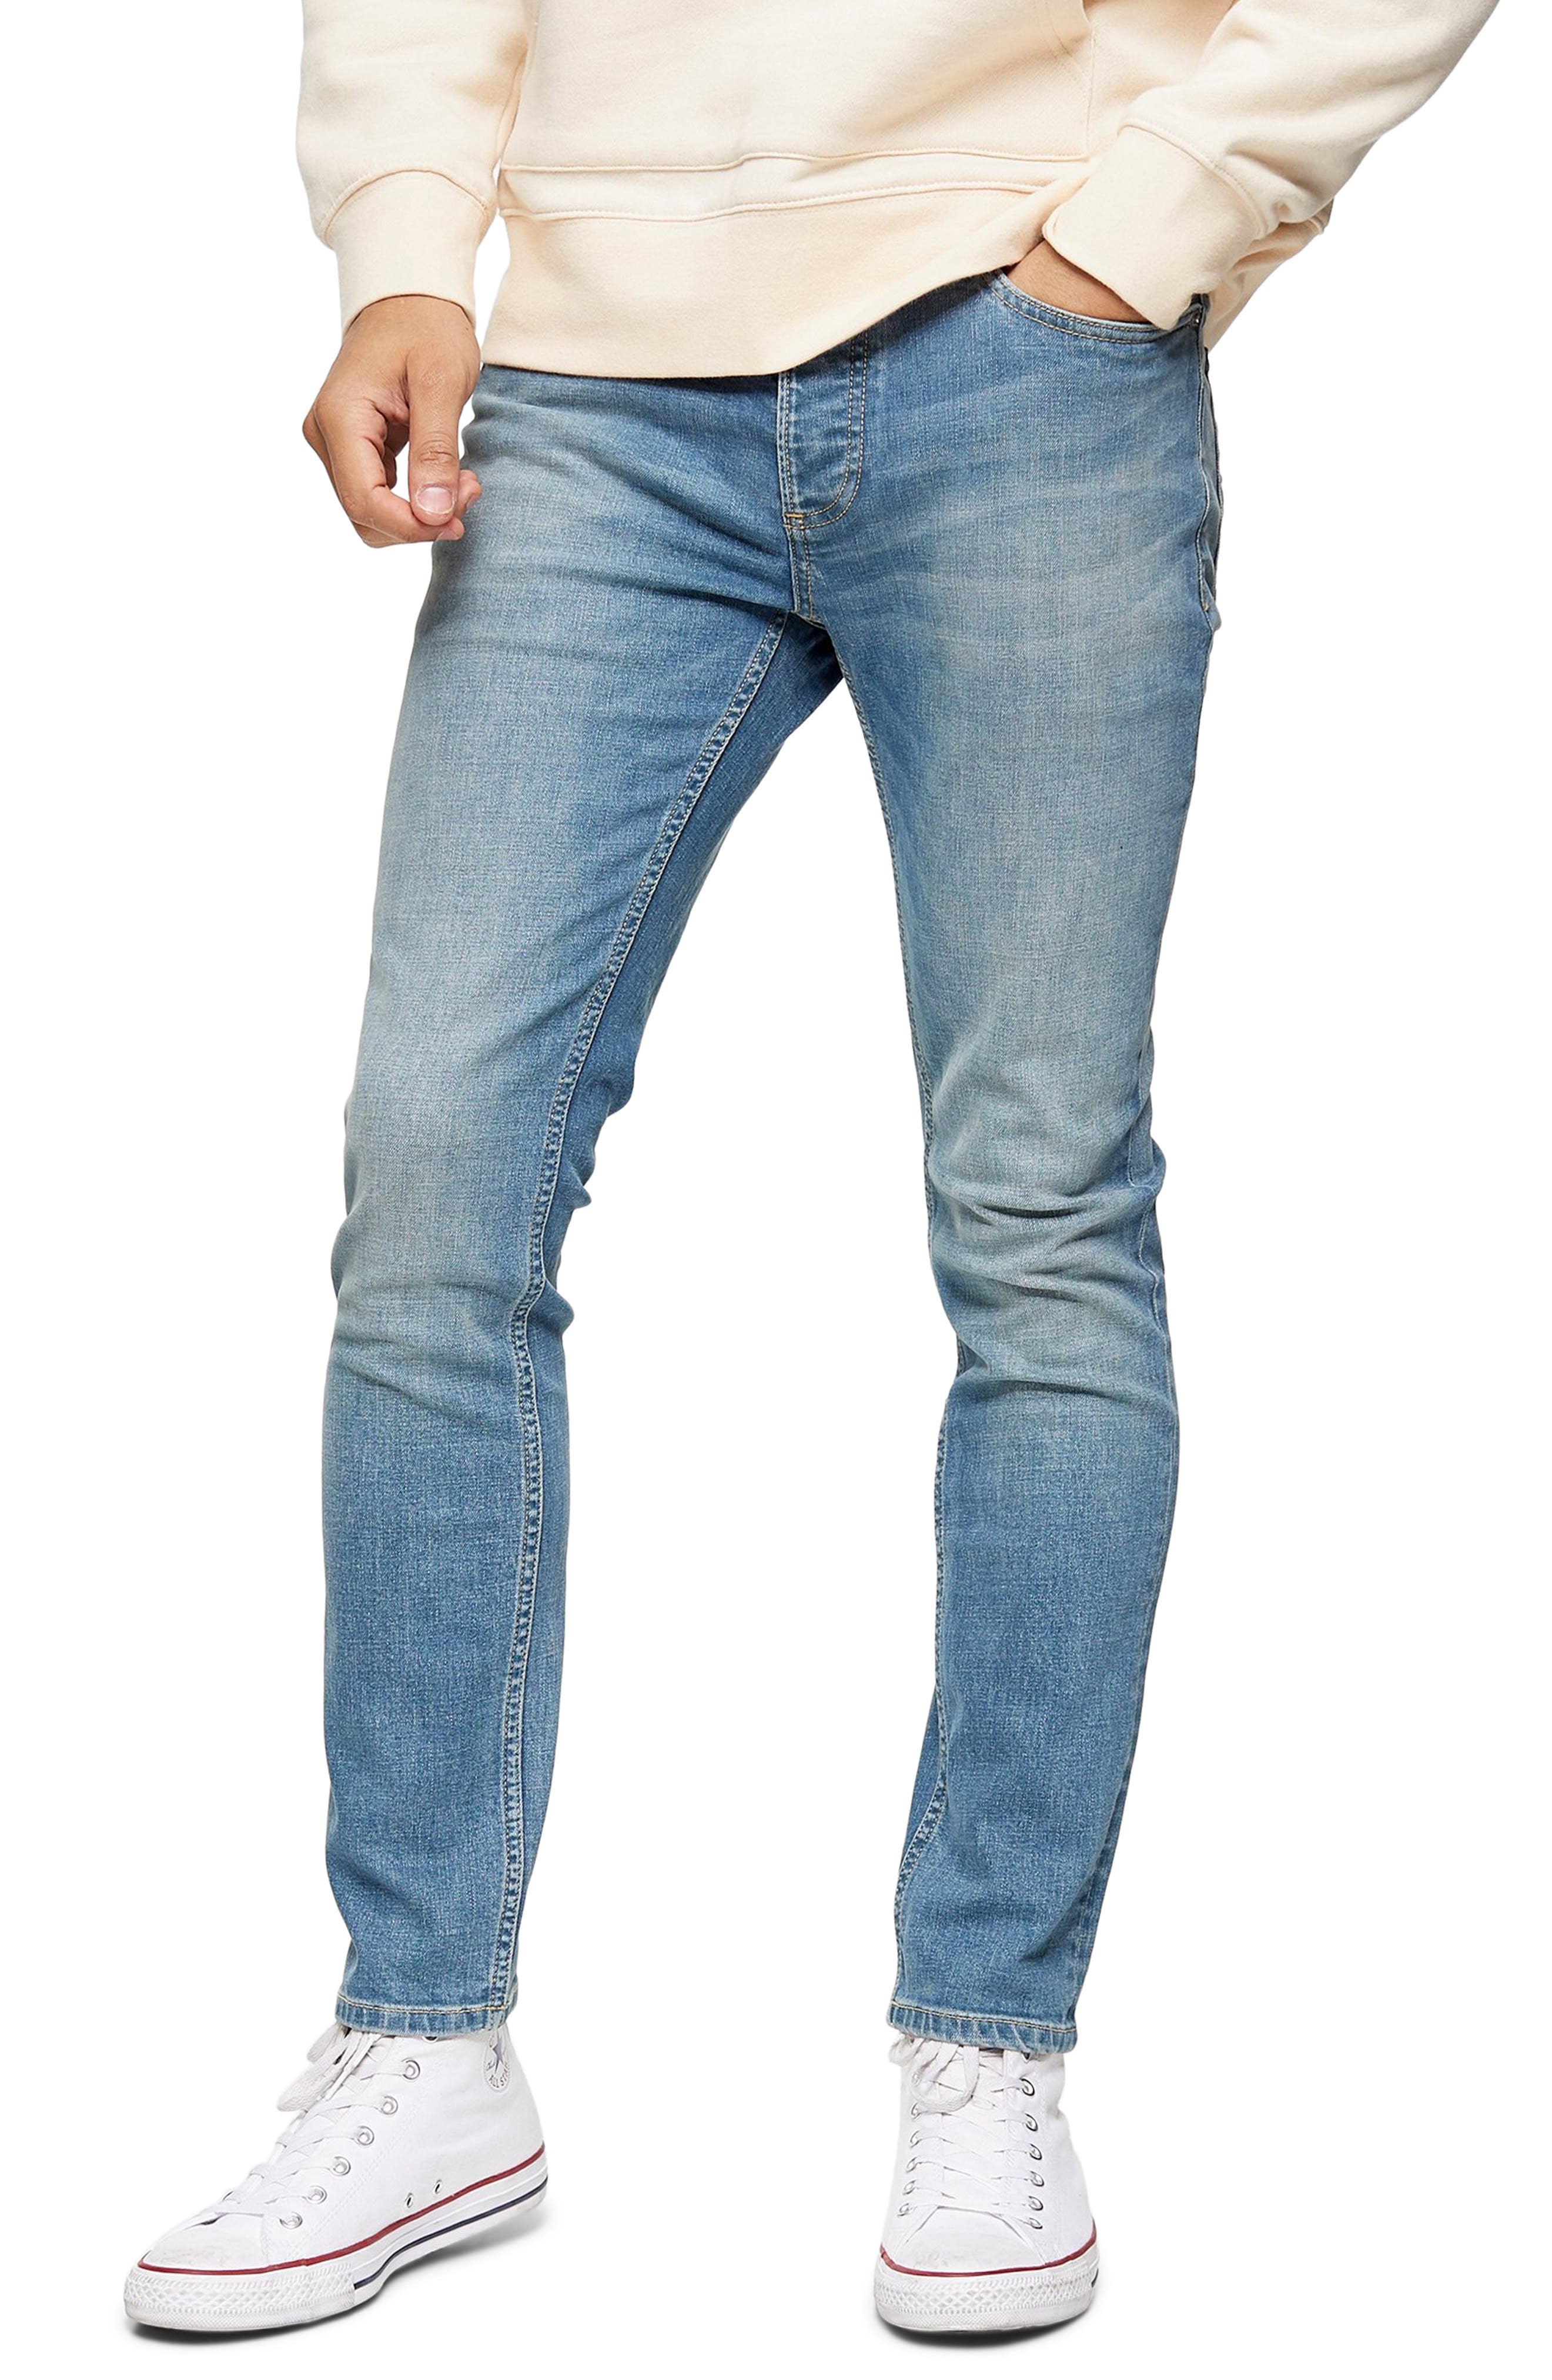 jeans vans hombre olive